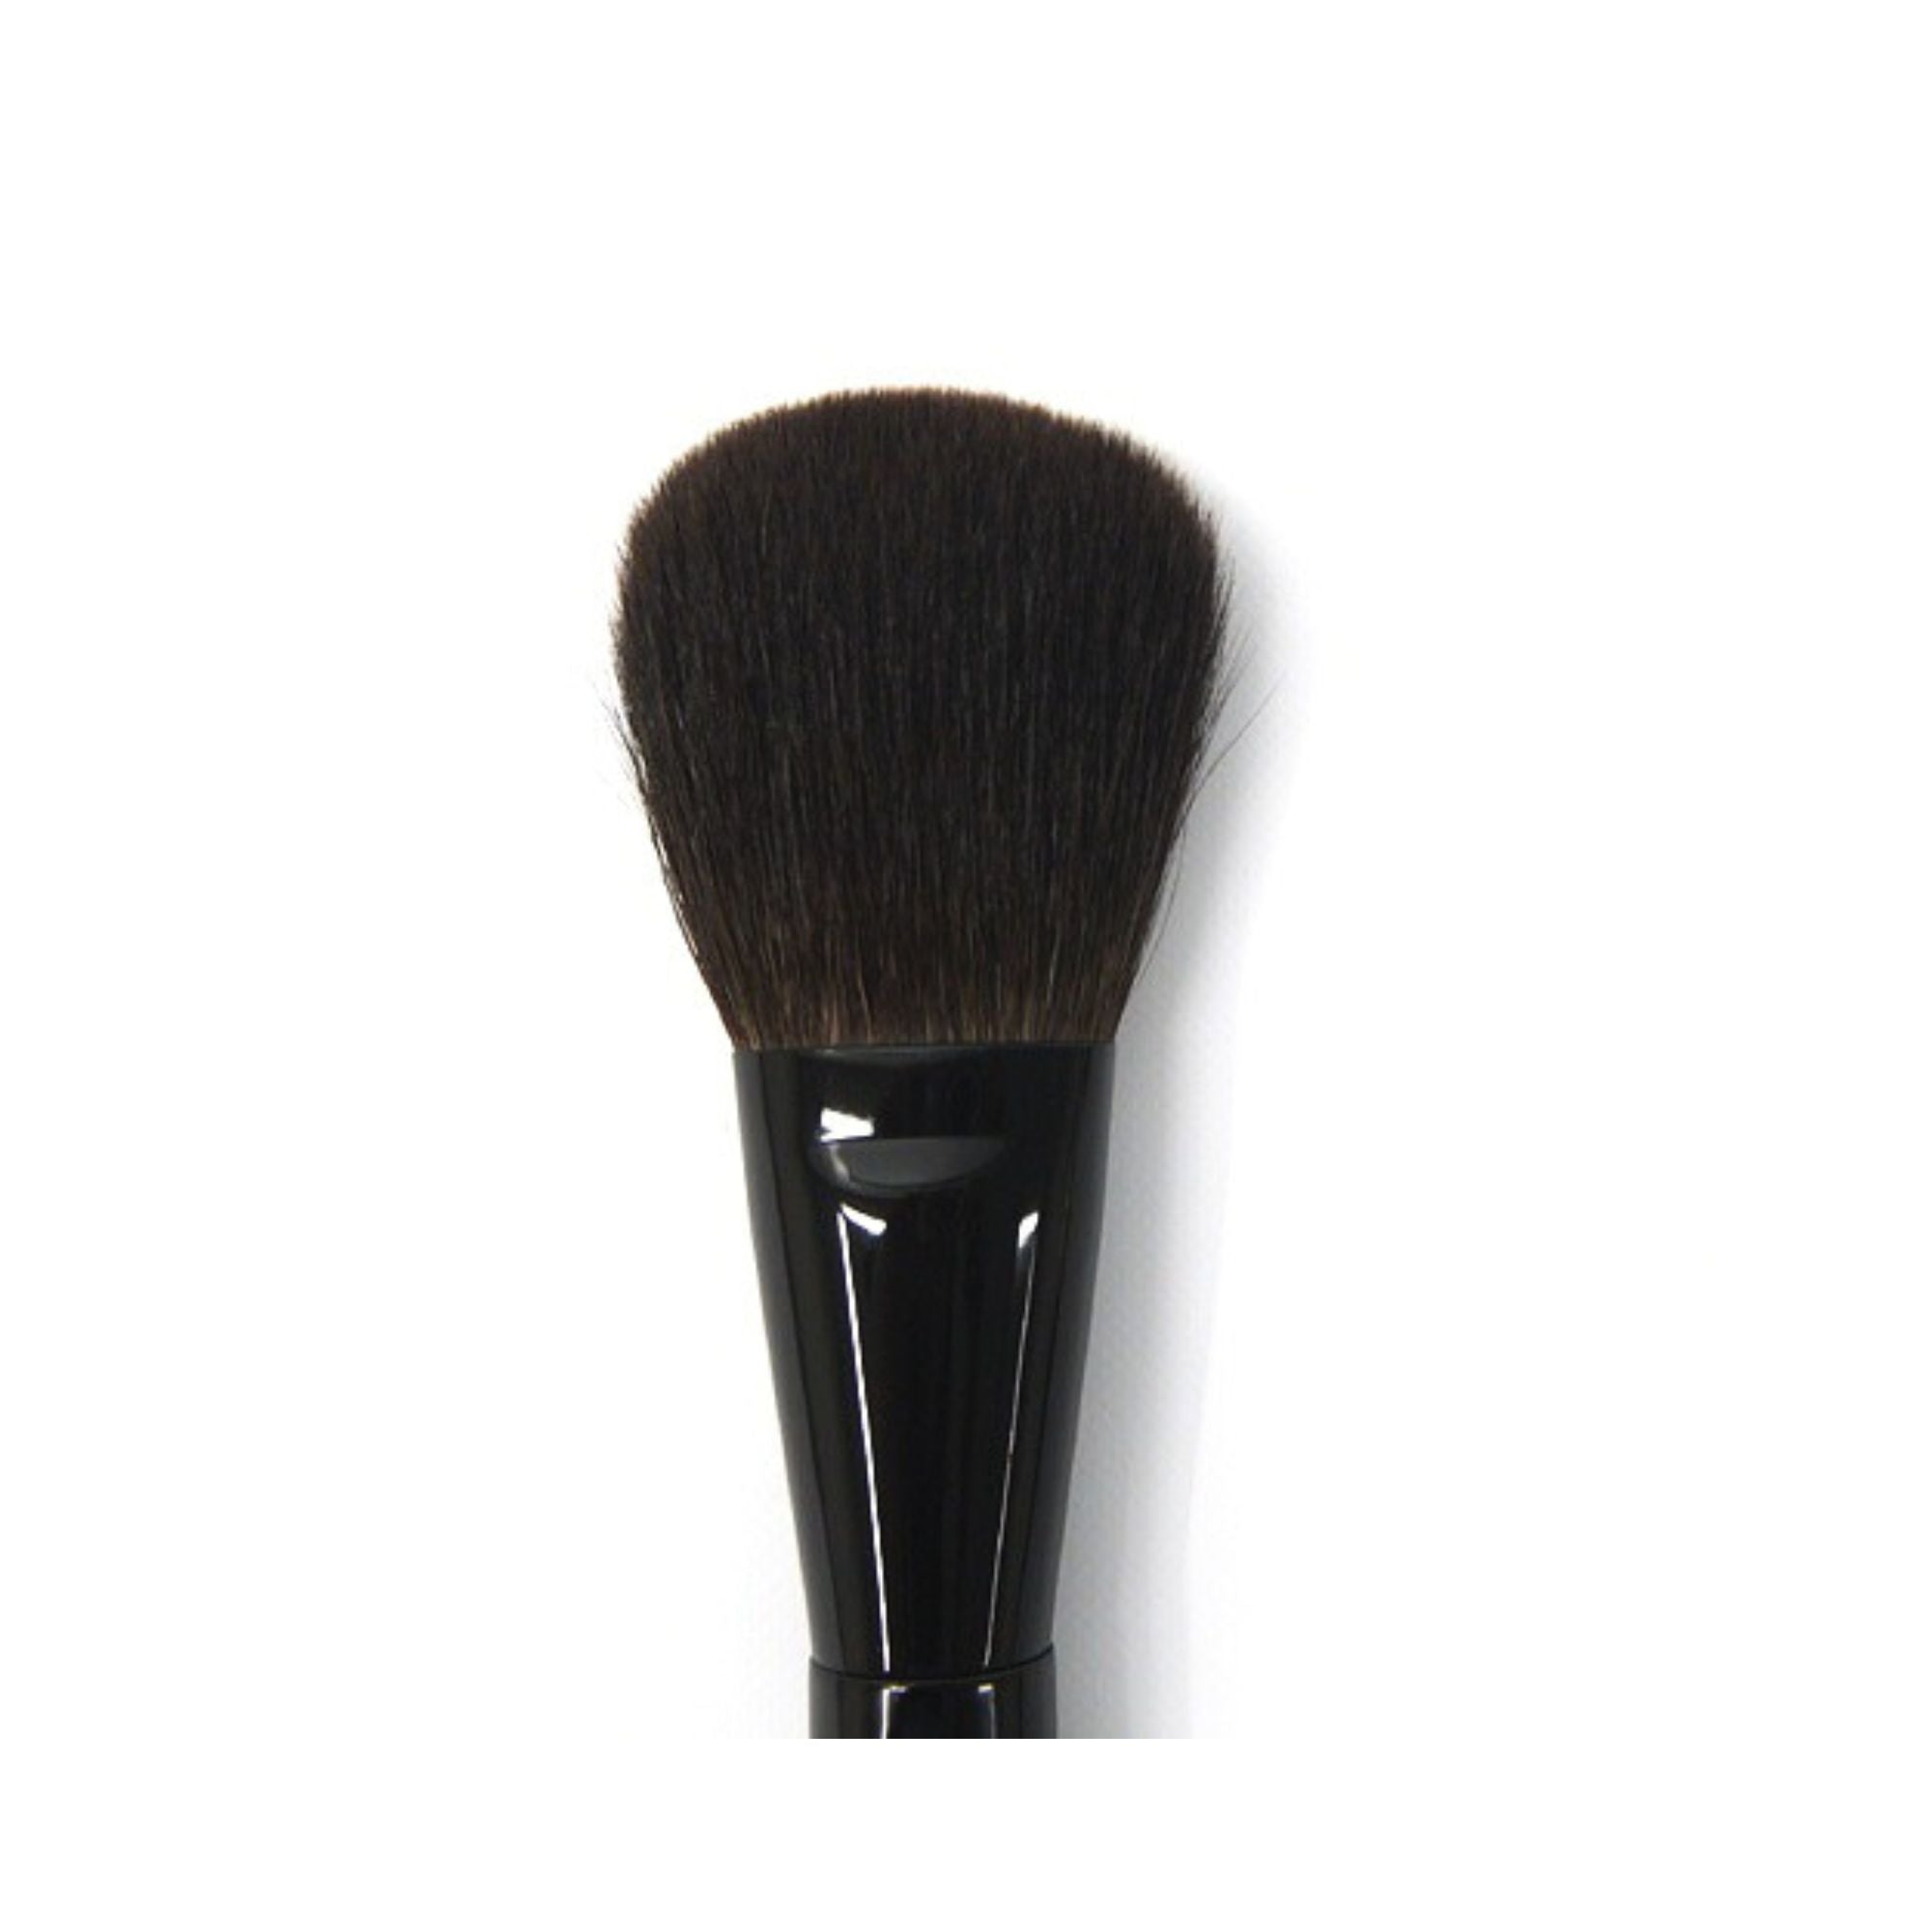 Koyudo Momiji Makie Powder Brush - Fude Beauty, Japanese Makeup Brushes